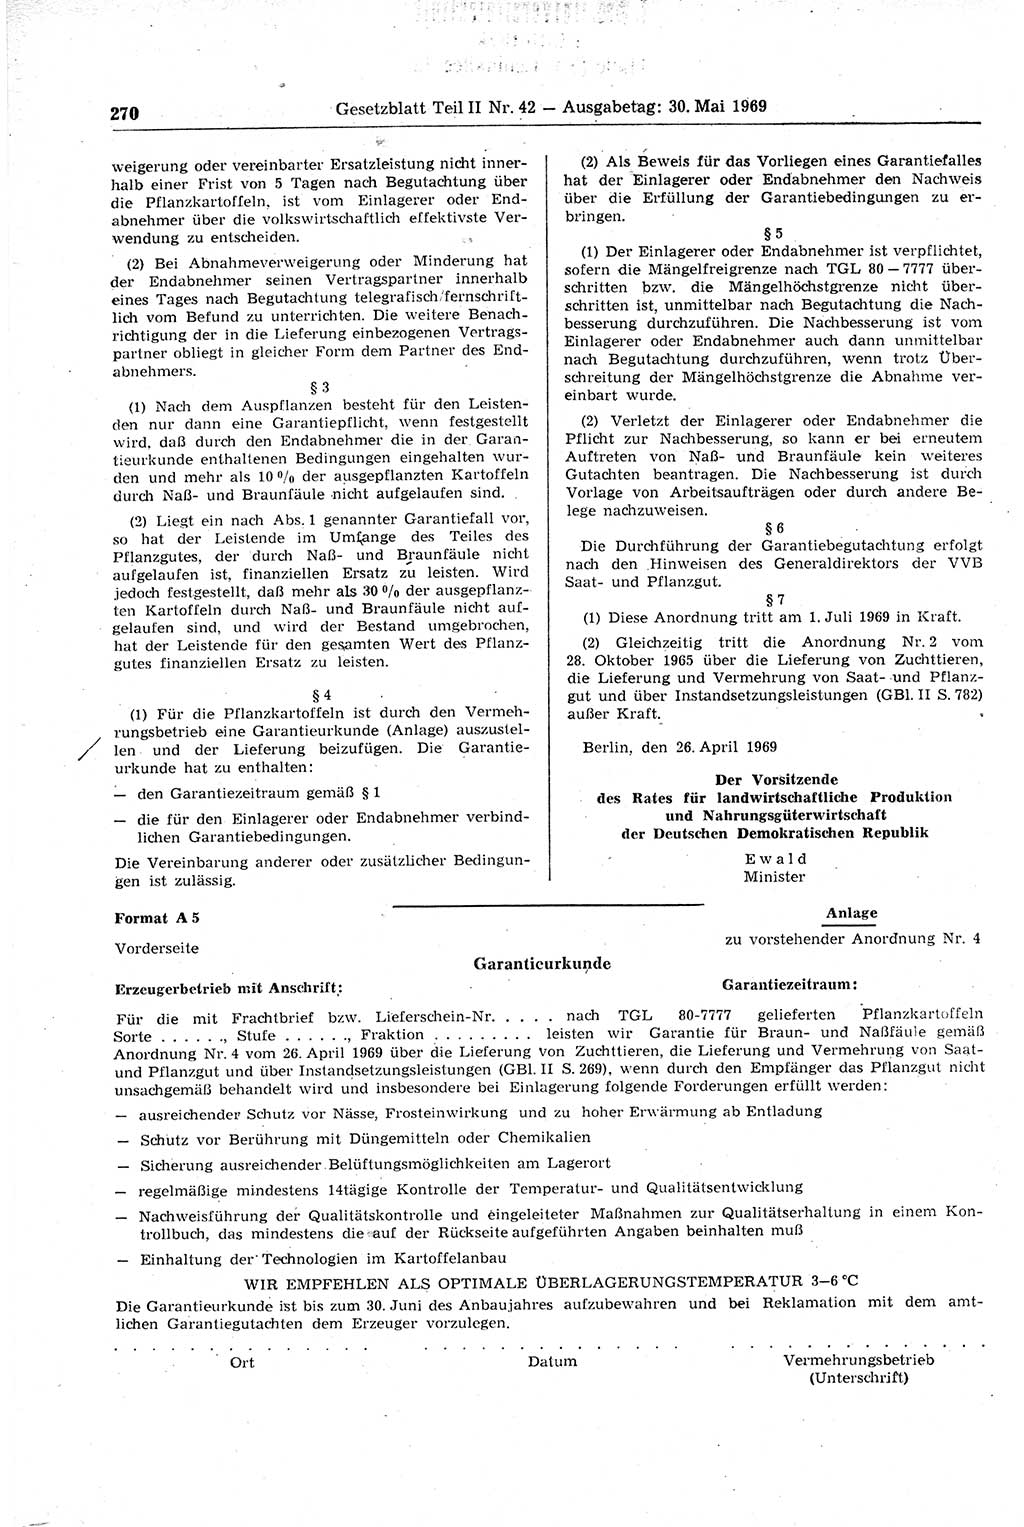 Gesetzblatt (GBl.) der Deutschen Demokratischen Republik (DDR) Teil ⅠⅠ 1969, Seite 270 (GBl. DDR ⅠⅠ 1969, S. 270)